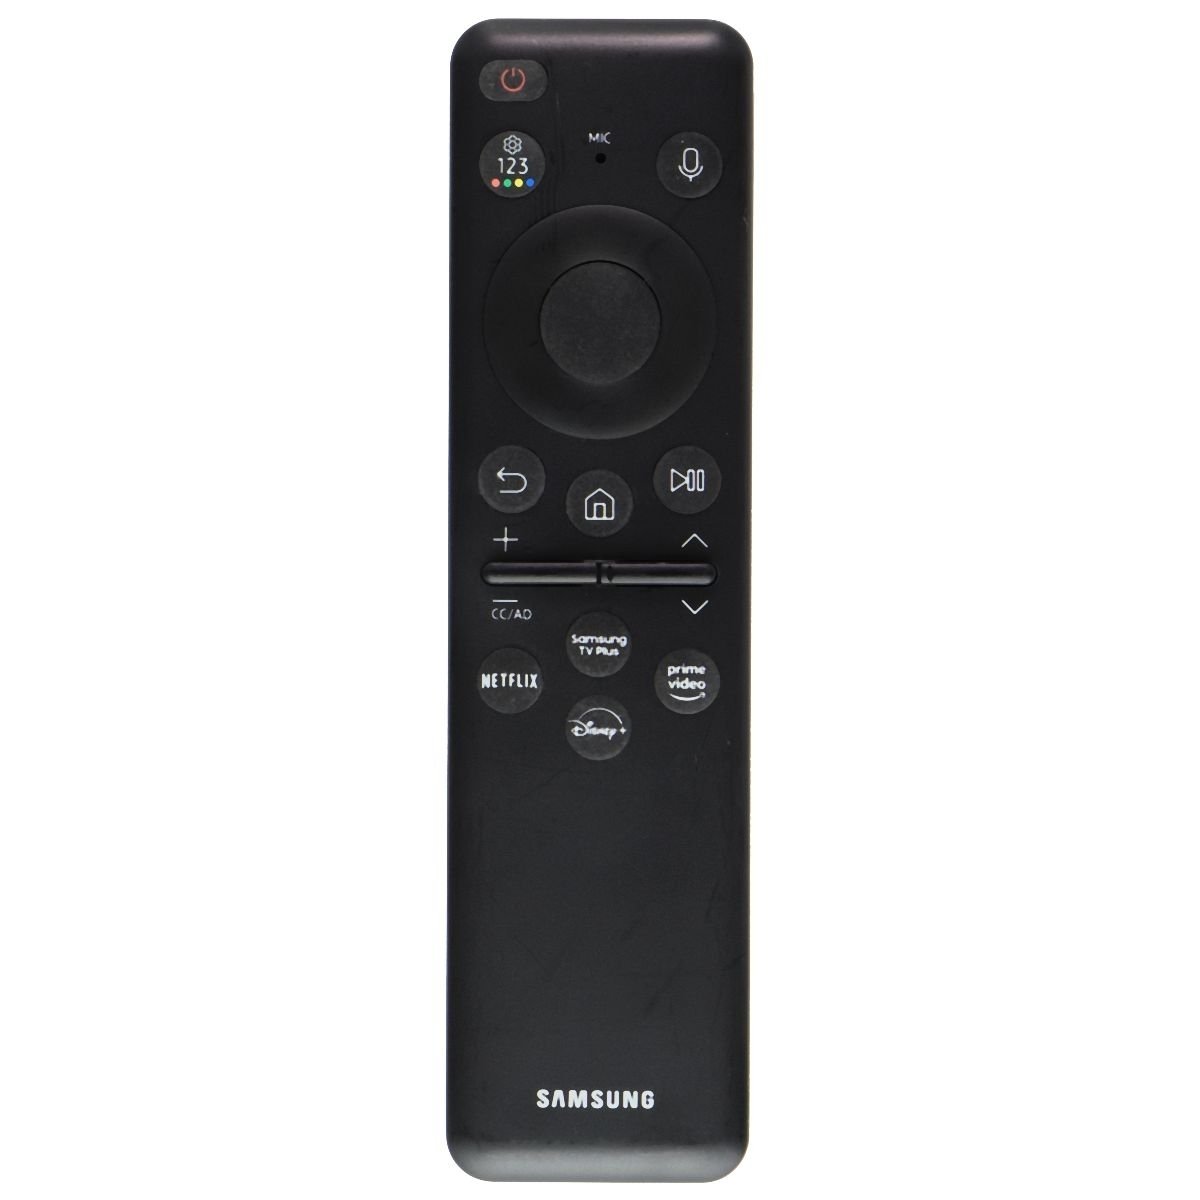 Samsung OEM Remote Control (BN59-01432A) For Select Samsung TVs - Black (Refurbished)